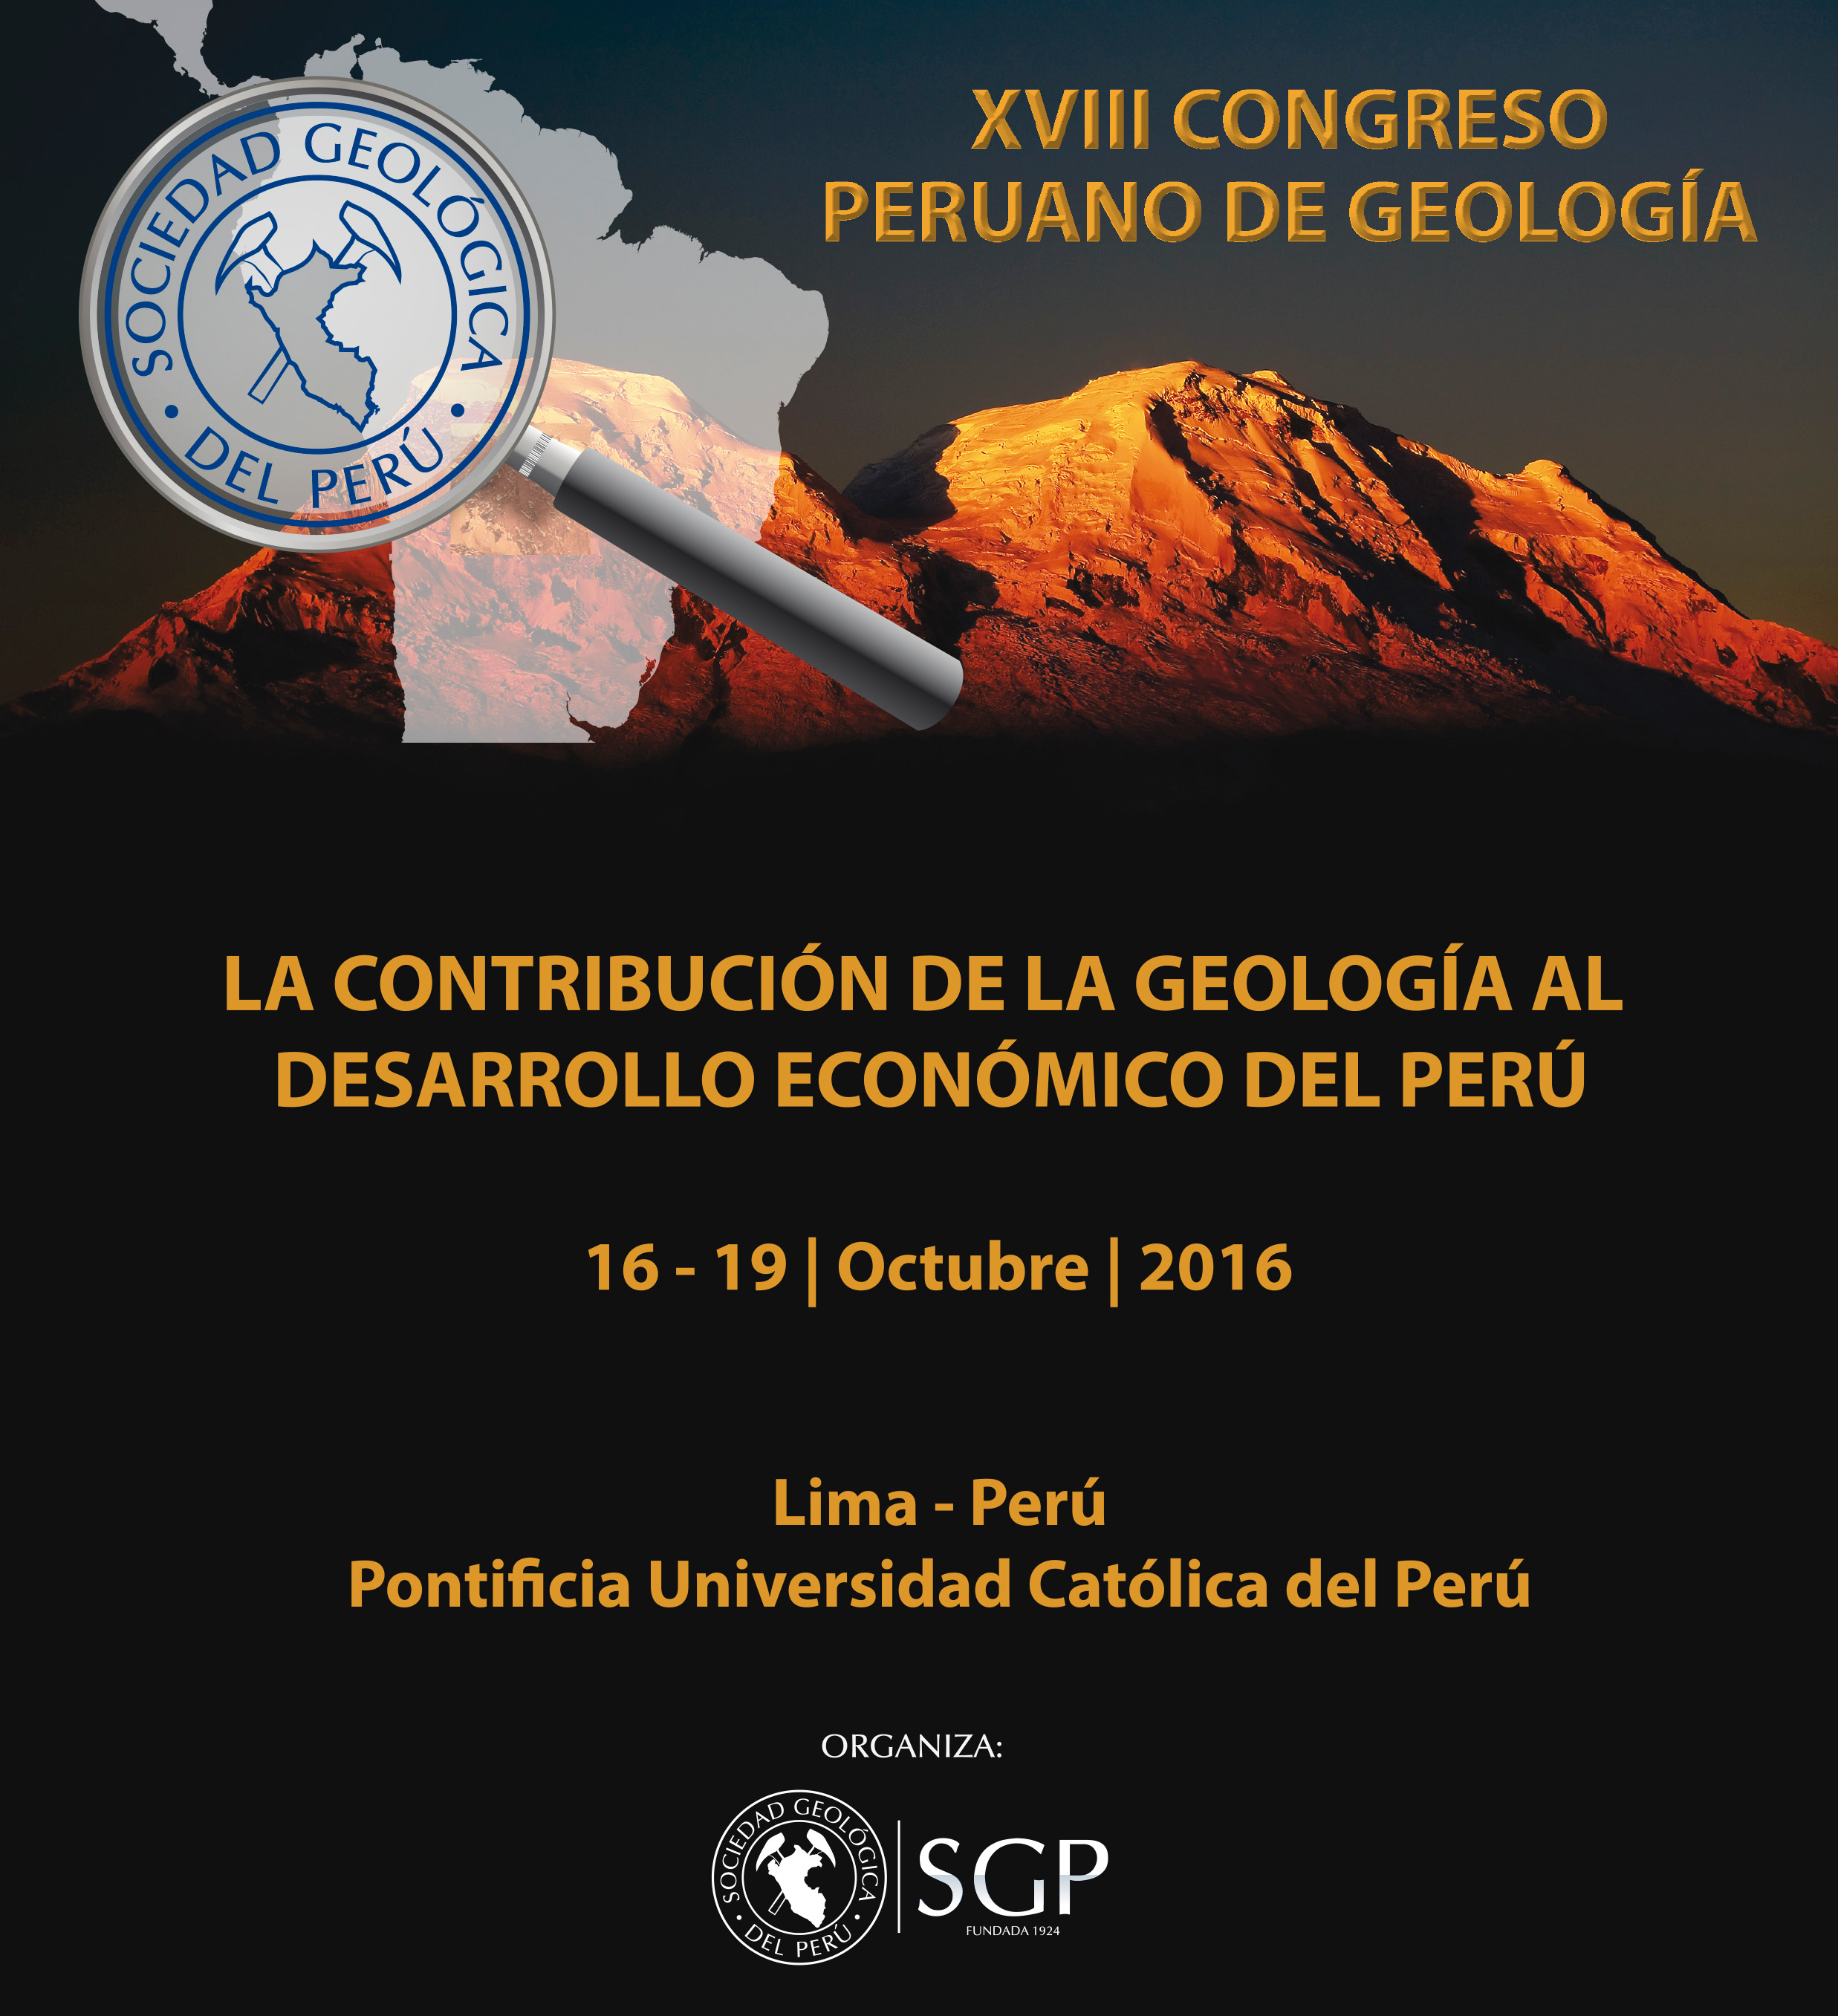 SCTS participará en el XVIII Congreso Peruano de Geología